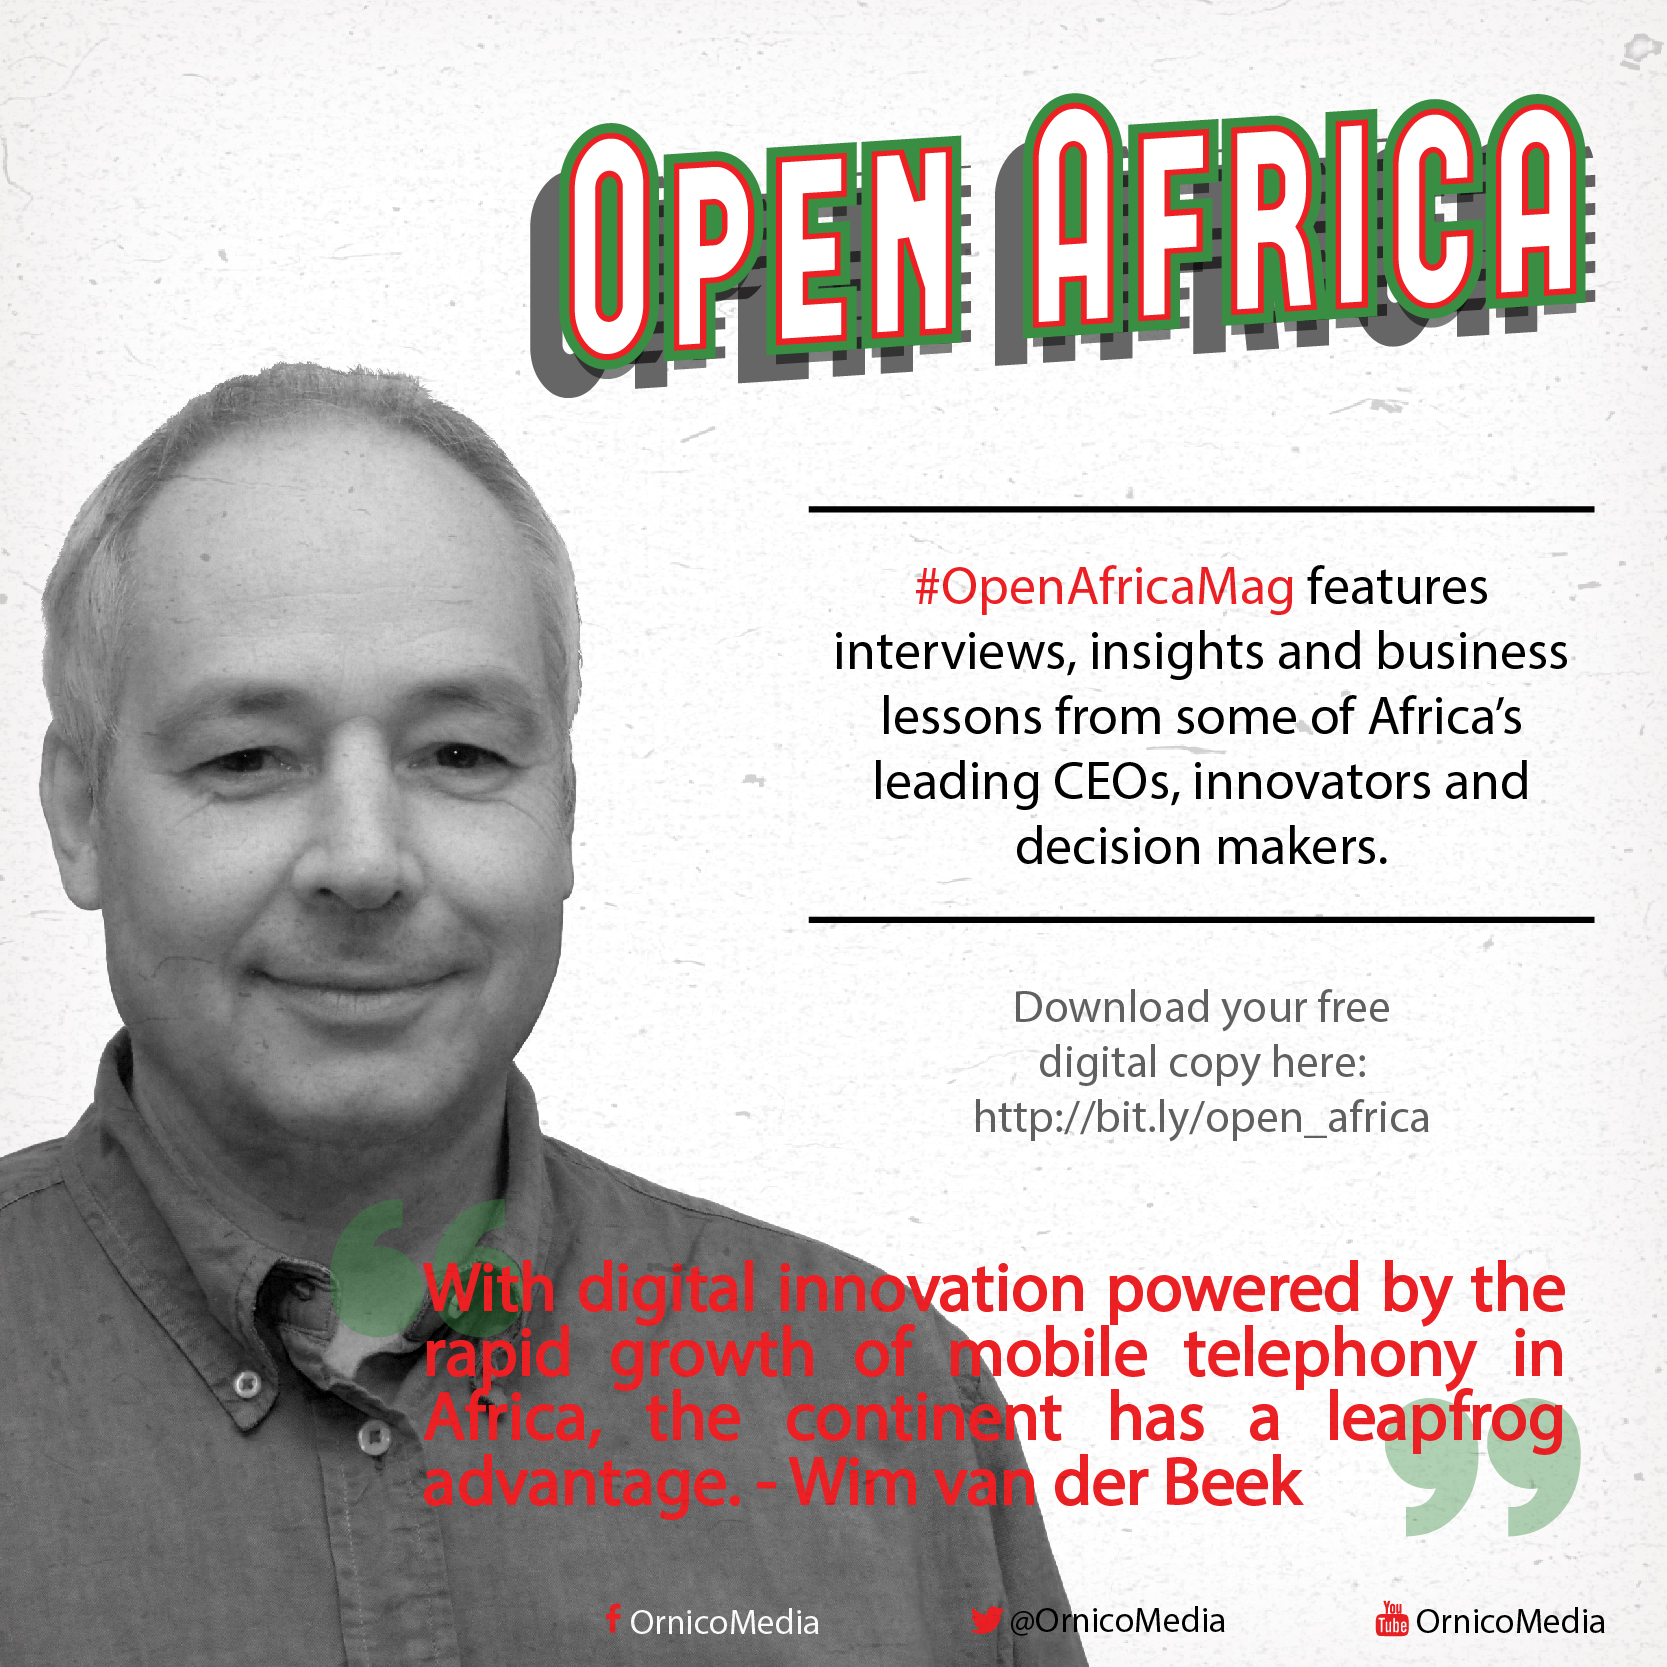 Open Africa: Wim van der Beek